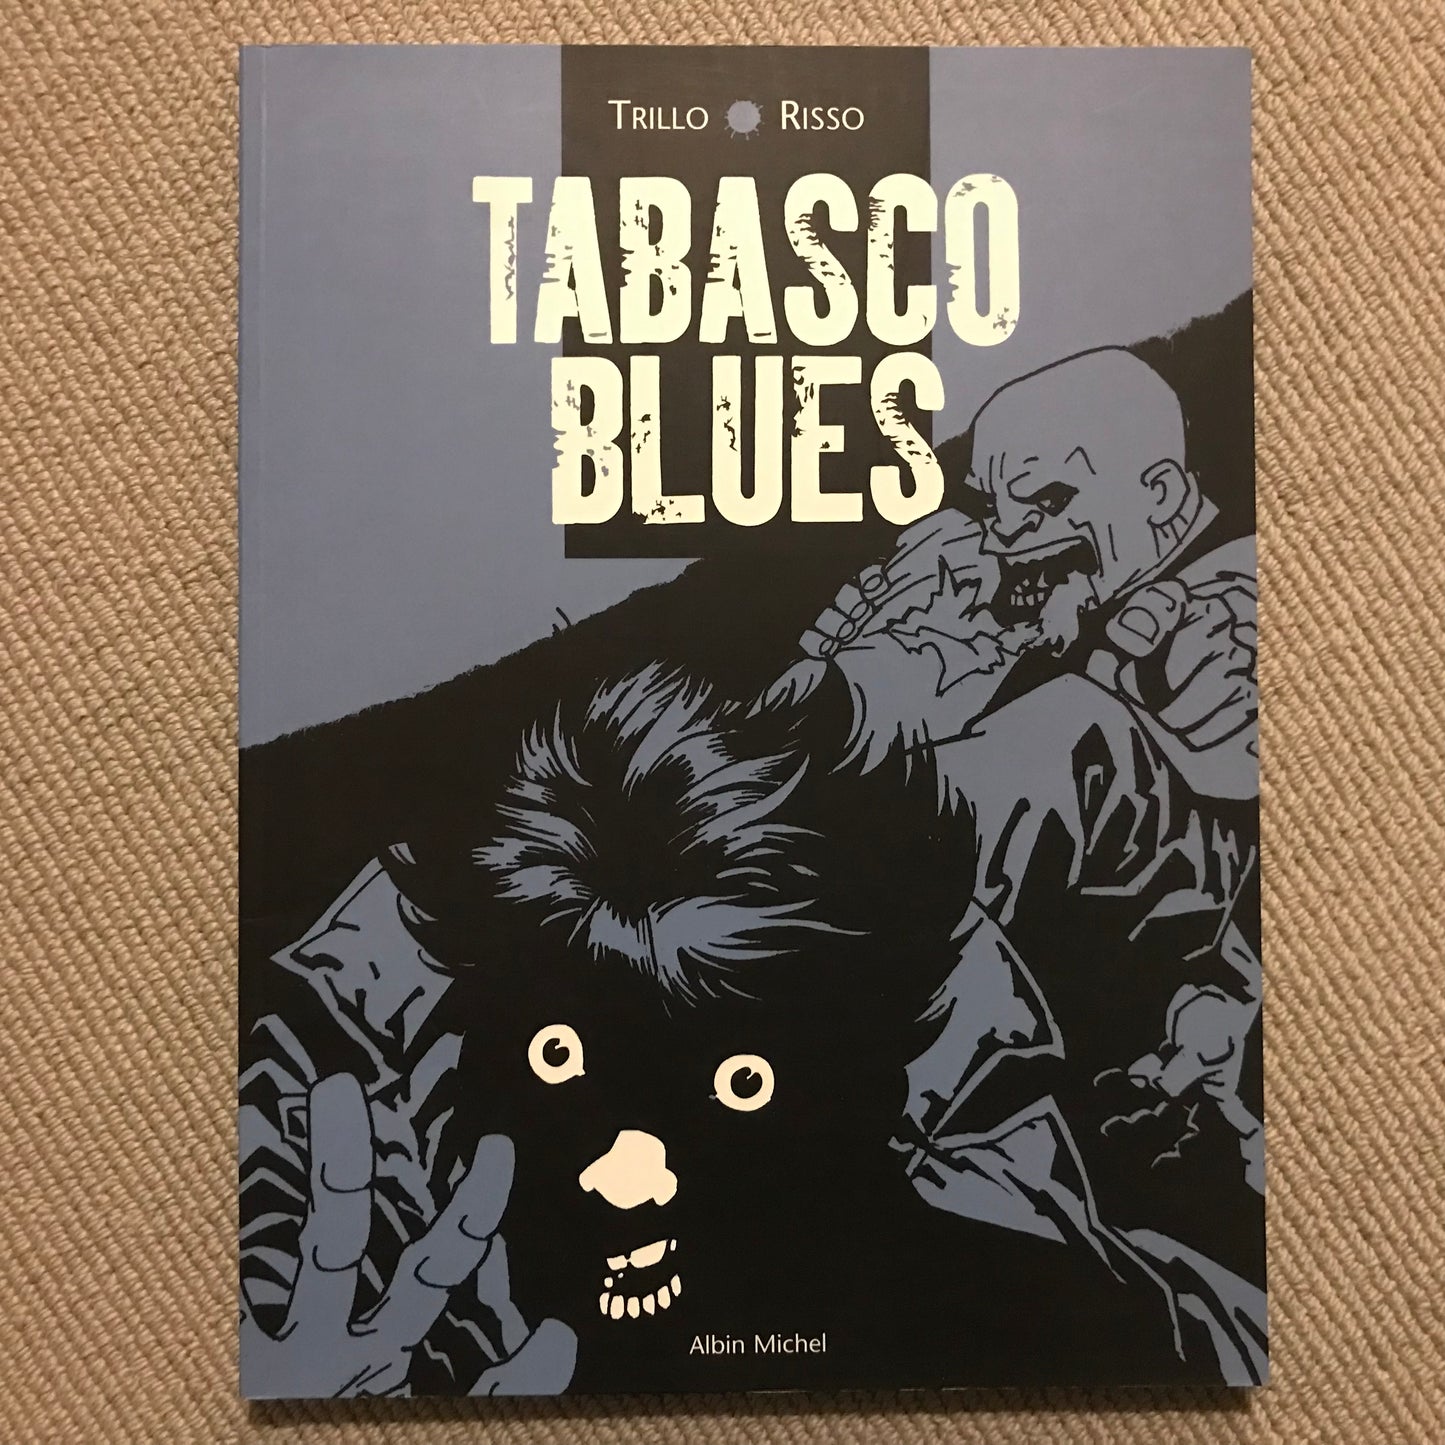 Tabasco blues - Trillo & Risso